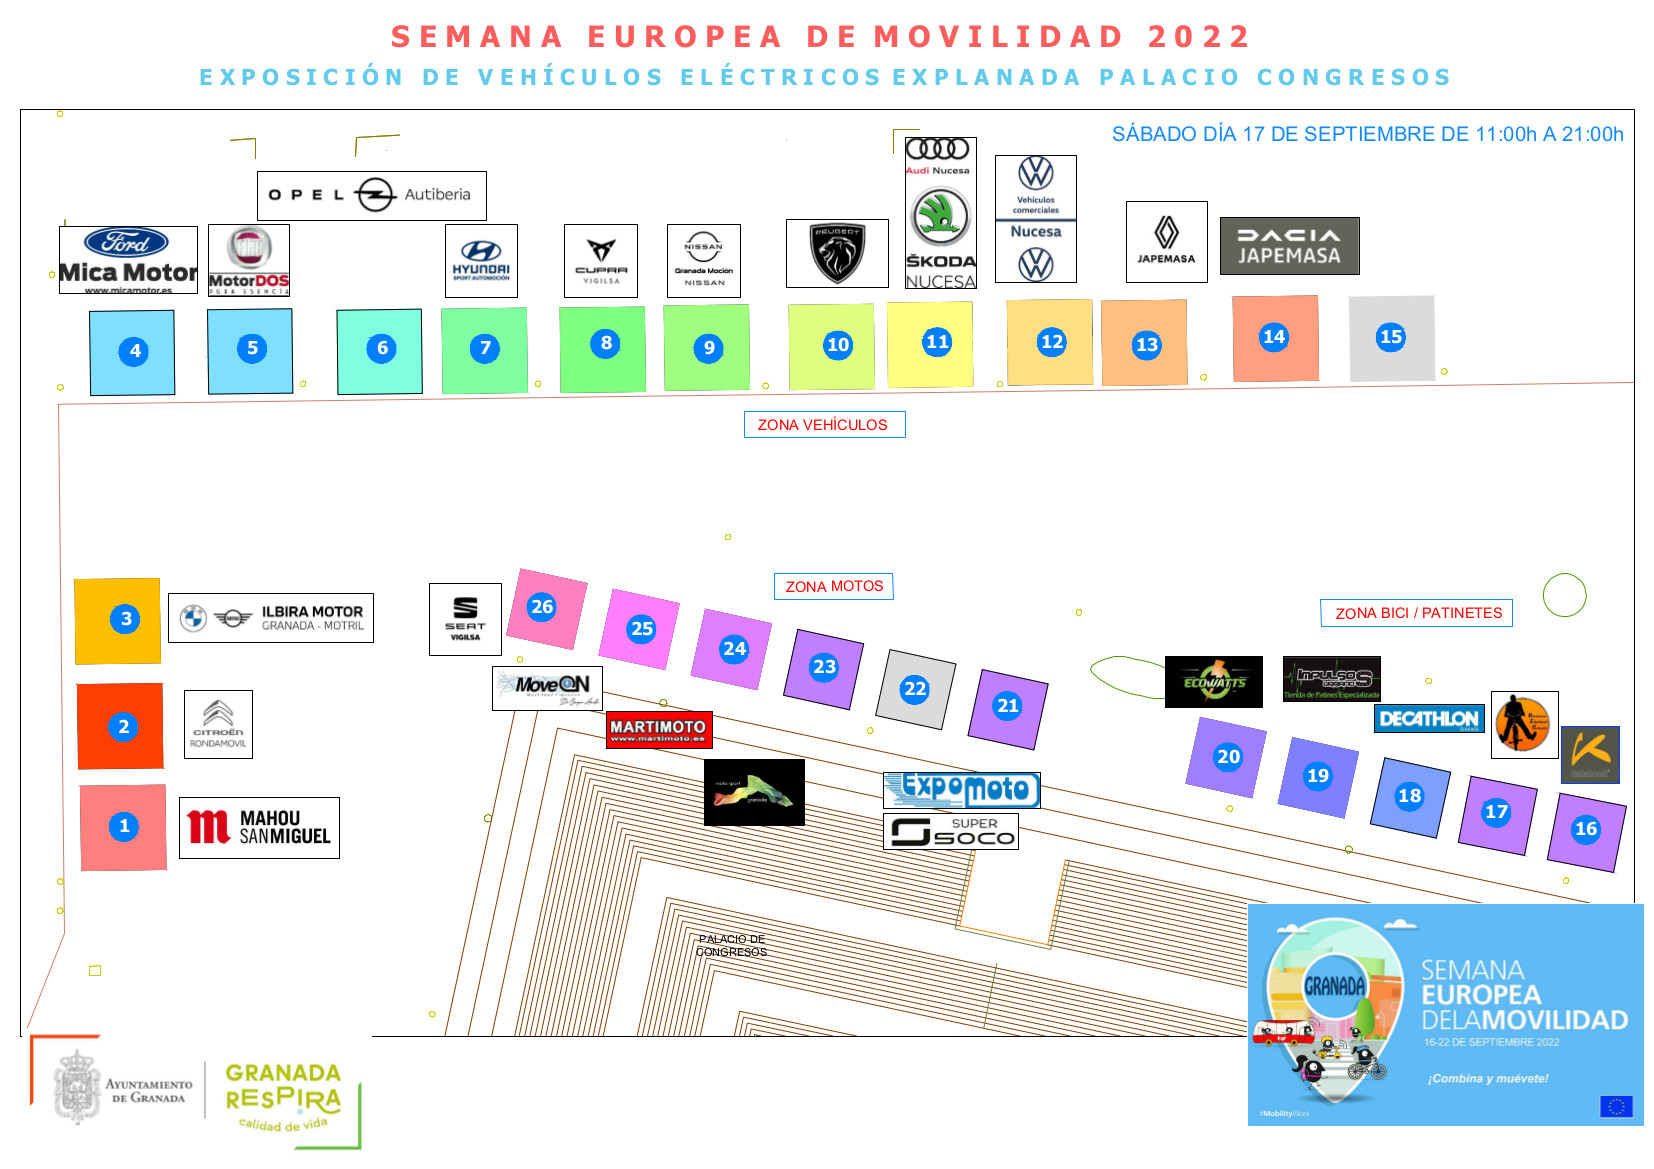 Plano exposición vehículos electricos en explanada del palacio de congresos SEM2022